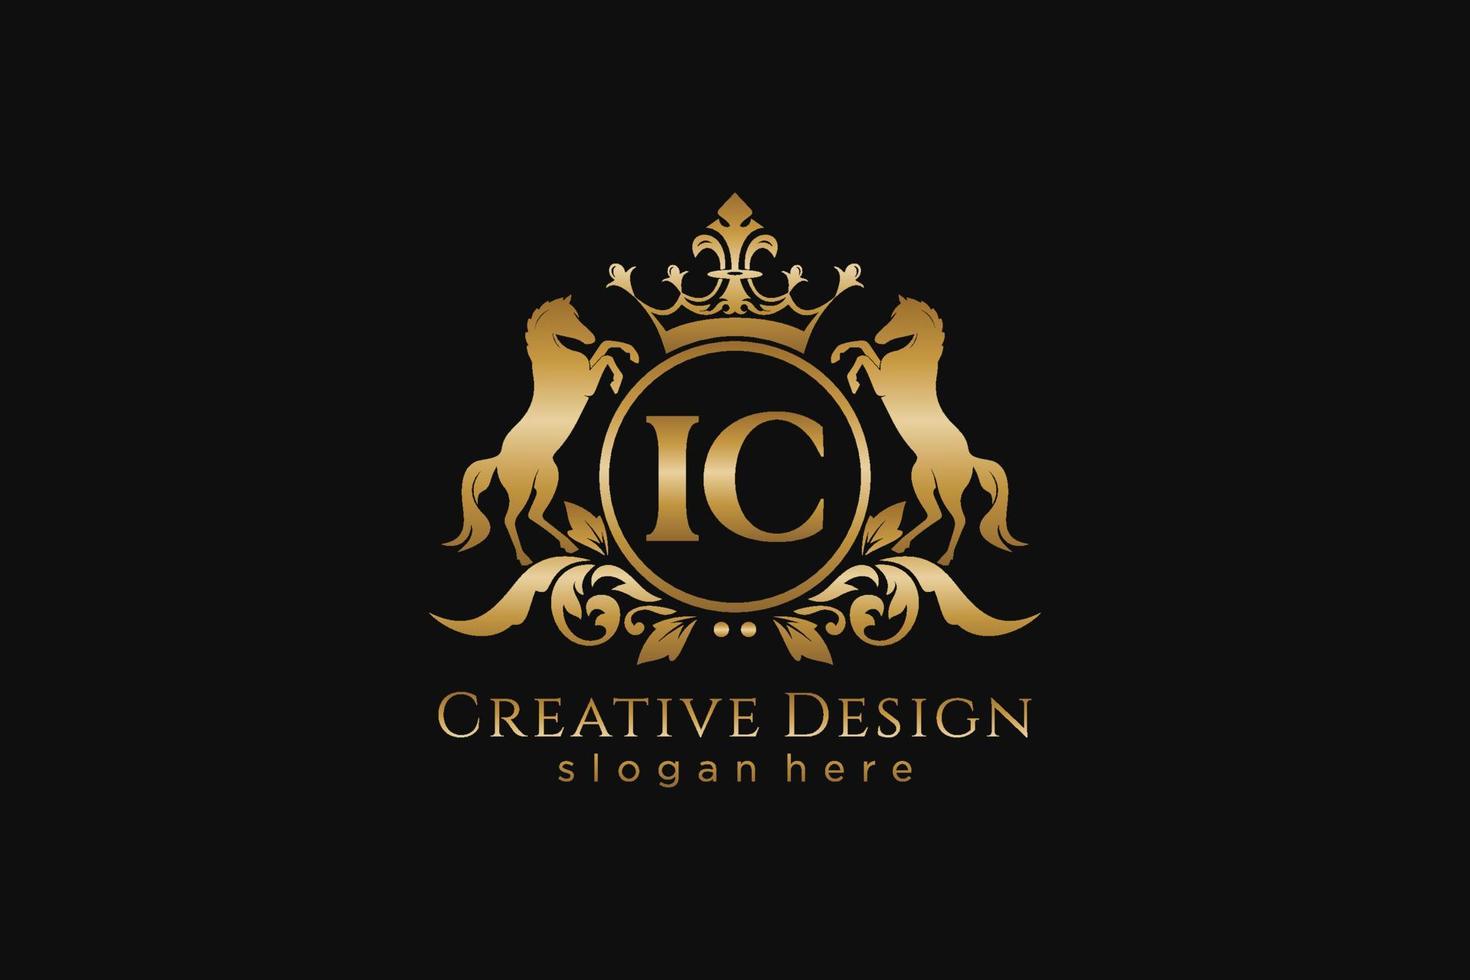 cresta dorada retro ic inicial con círculo y dos caballos, plantilla de insignia con pergaminos y corona real - perfecto para proyectos de marca de lujo vector